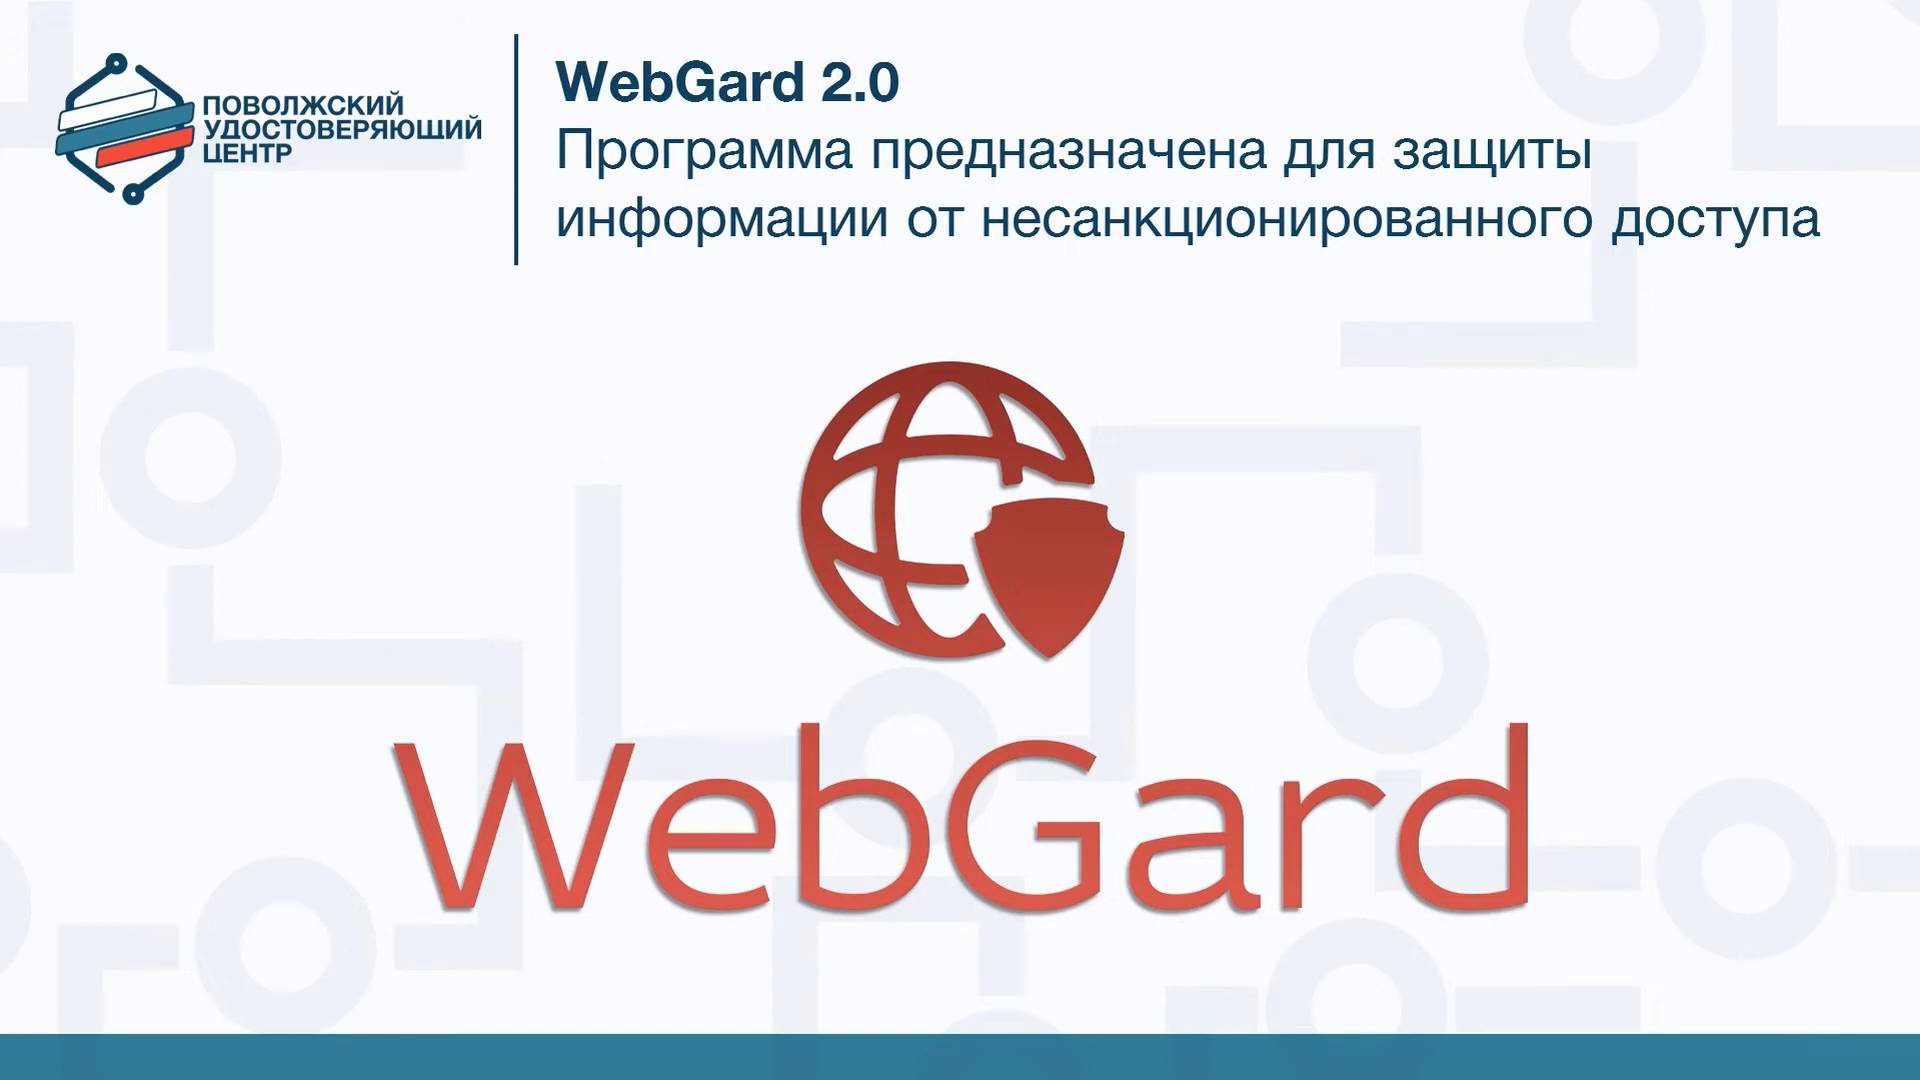 WebGard